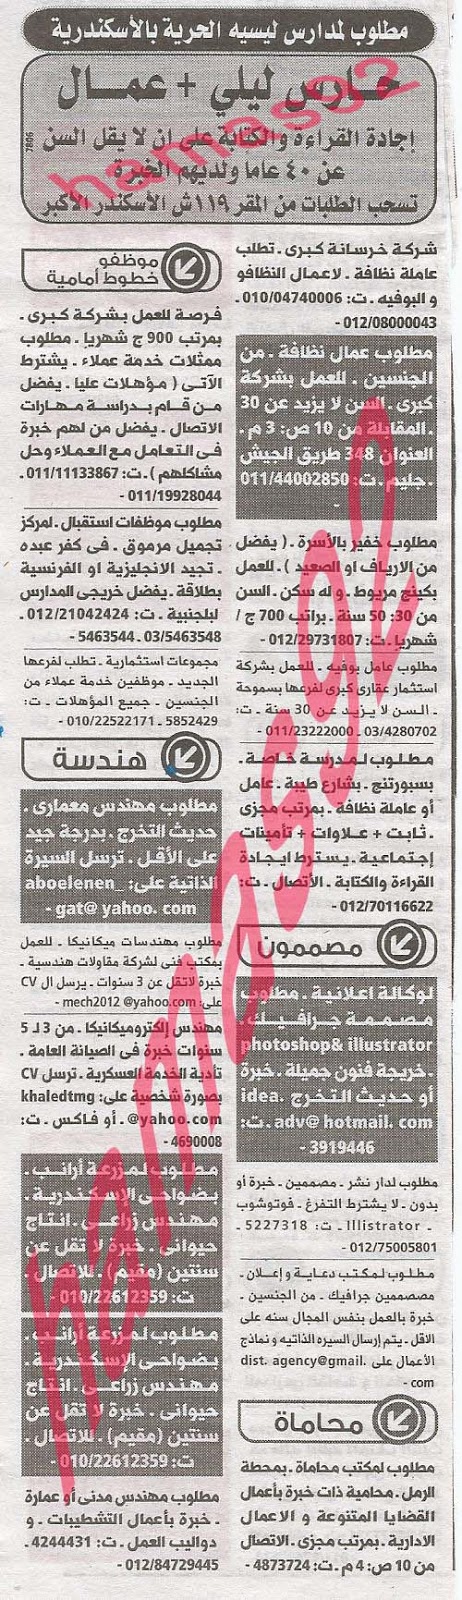 وظائف خالية من جريدة الوسيط الاسكندرية الثلاثاء 03-09-2013 %D9%88+%D8%B3+%D8%B3+4